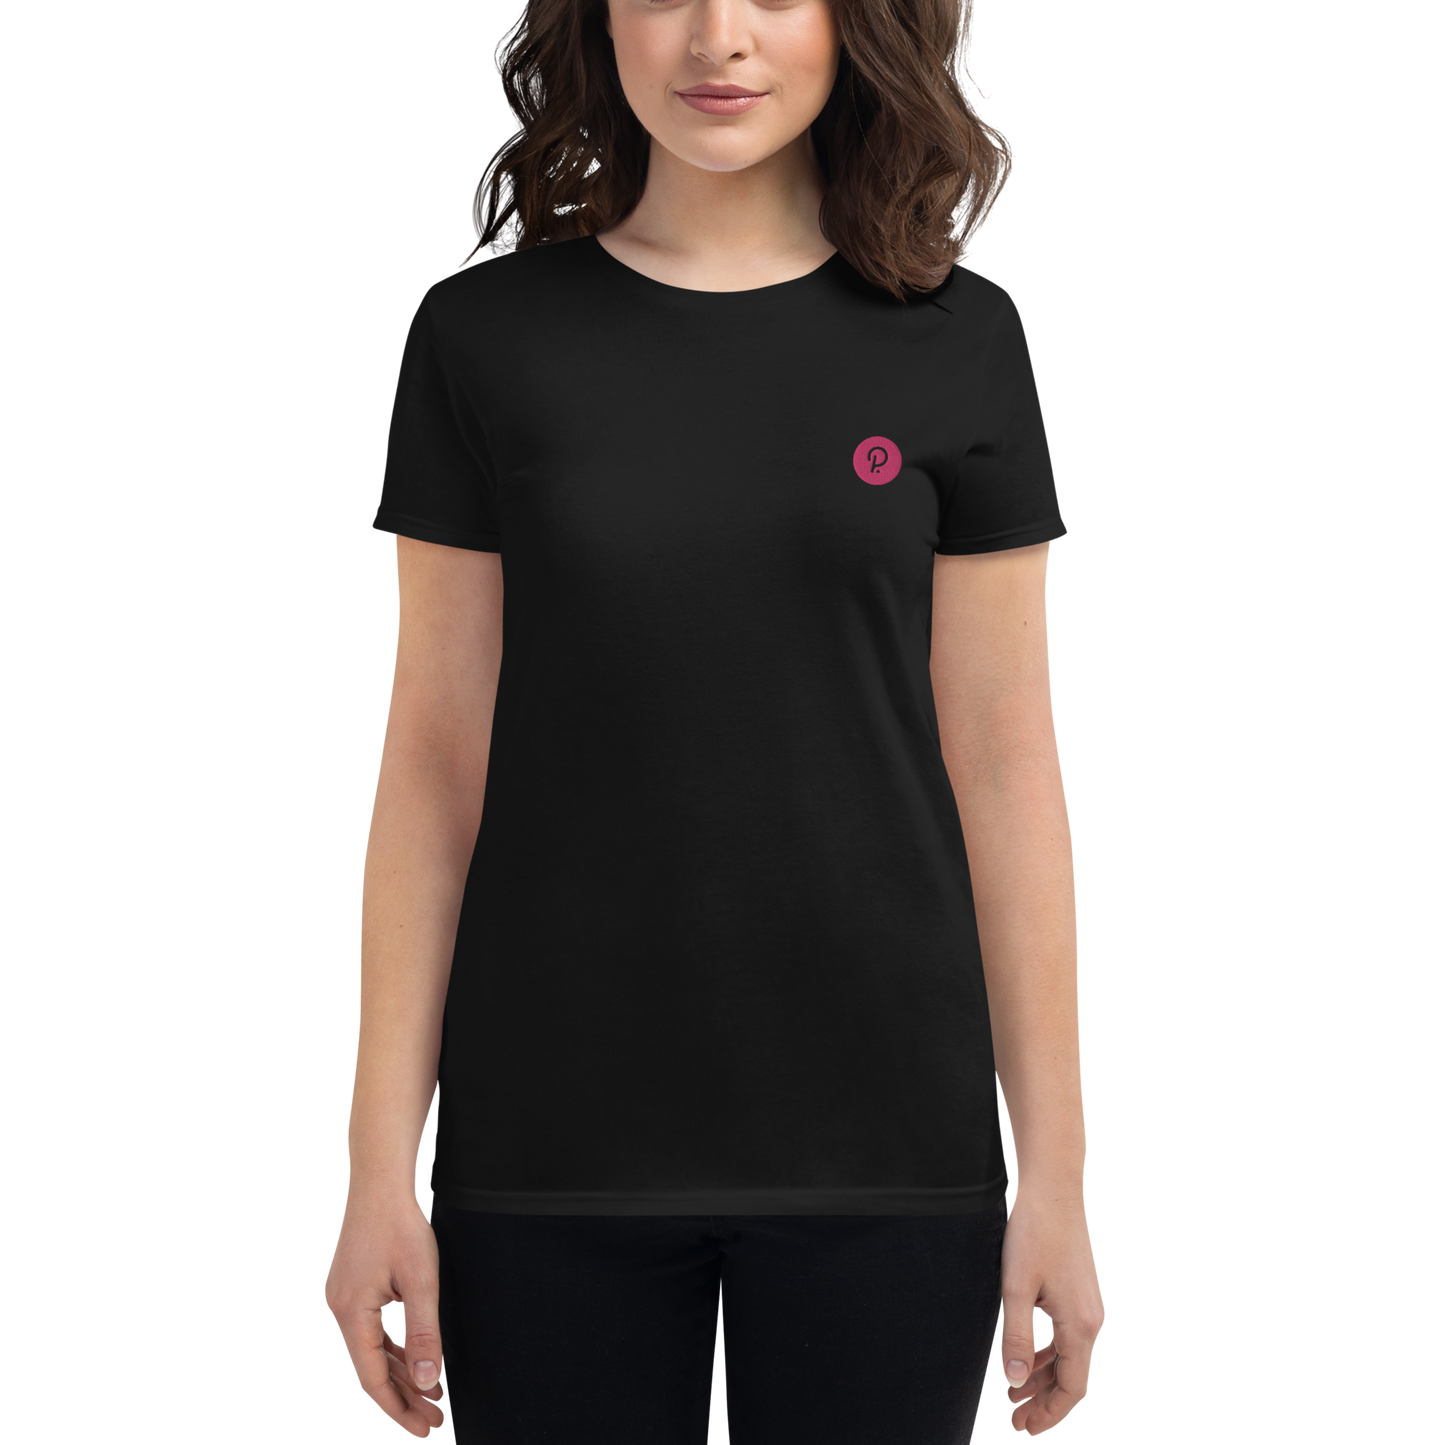 Polkadot (DOT) - Women's short sleeve t-shirt